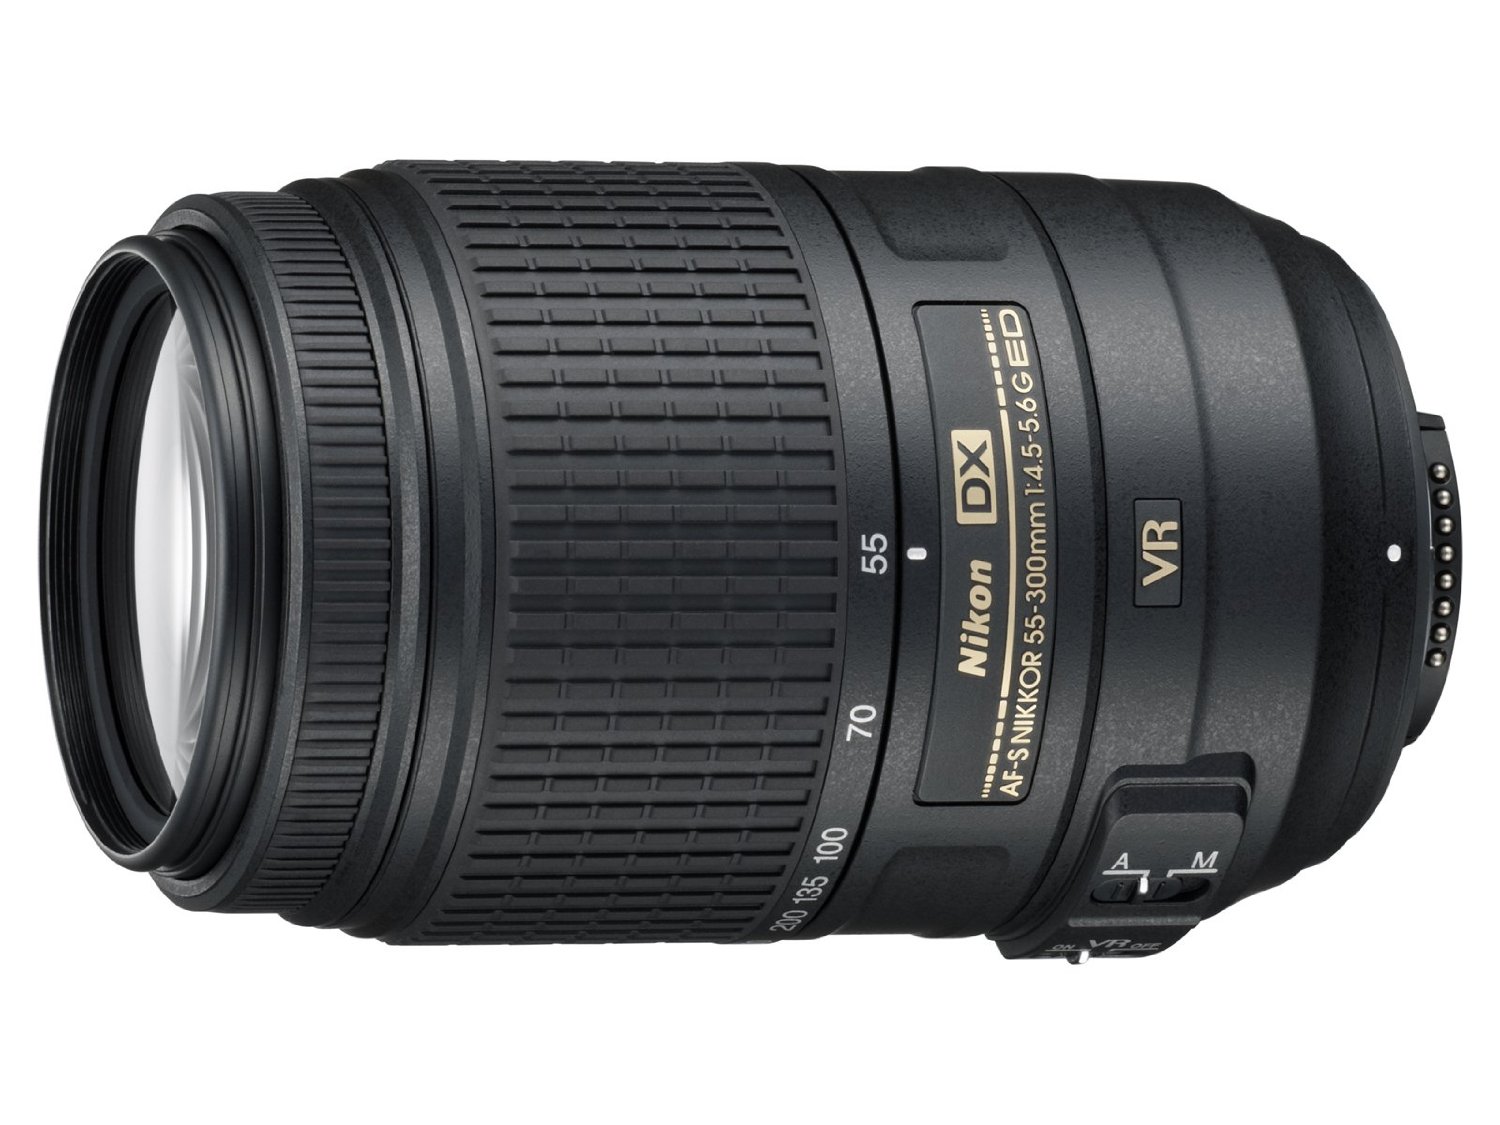 Nikon 55-300mm f/4.5-5.6G ED VR AF-S DX Nikkor Zoom Lens for Nikon Digital SLR